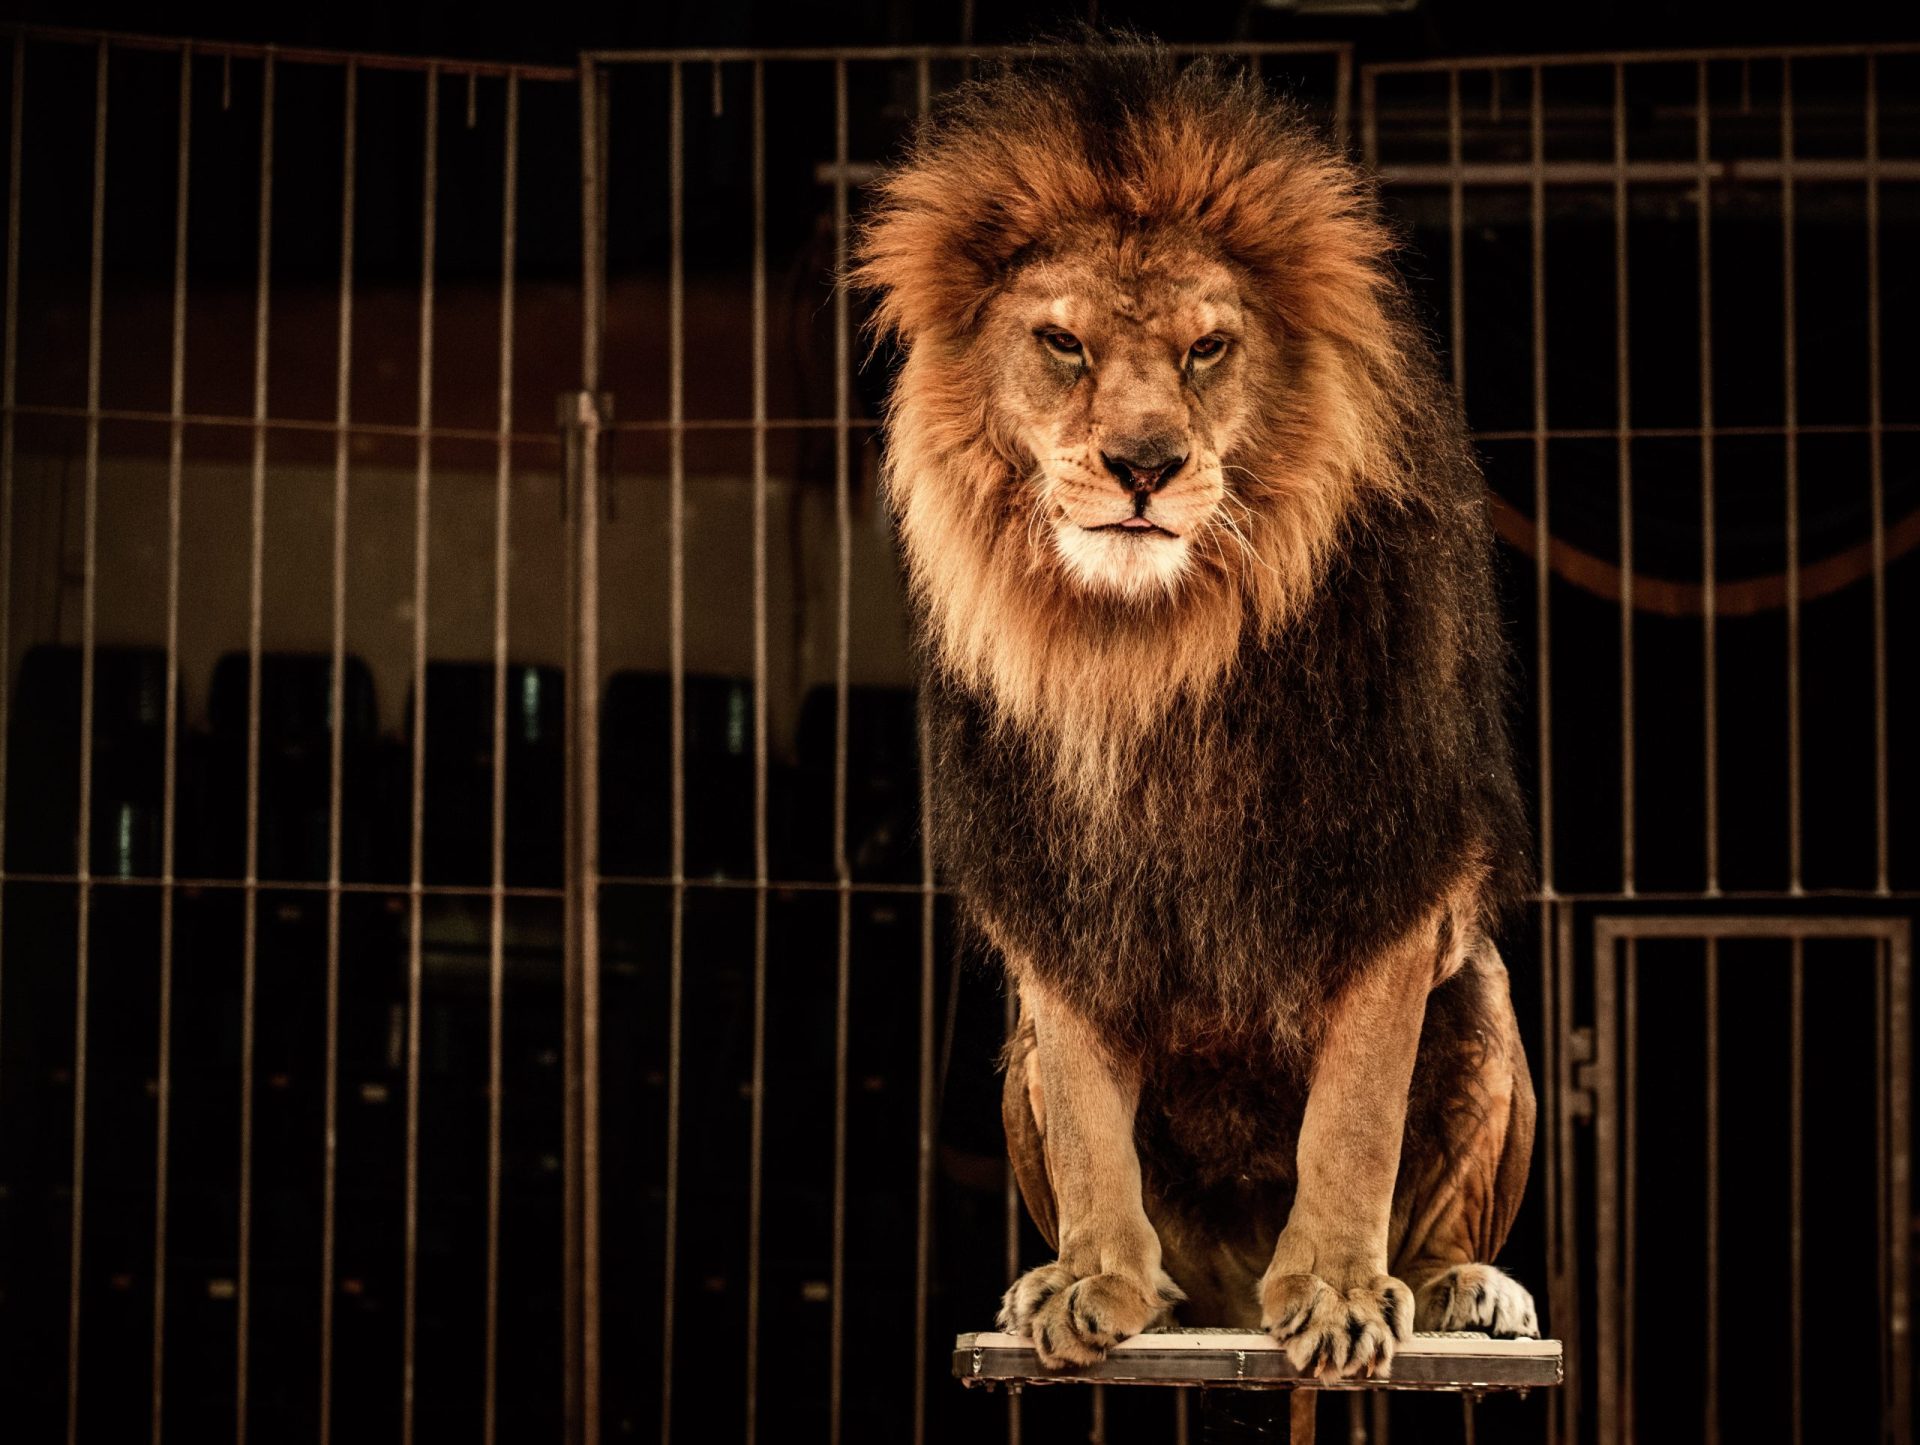 Filme com animais de circo gera polémica